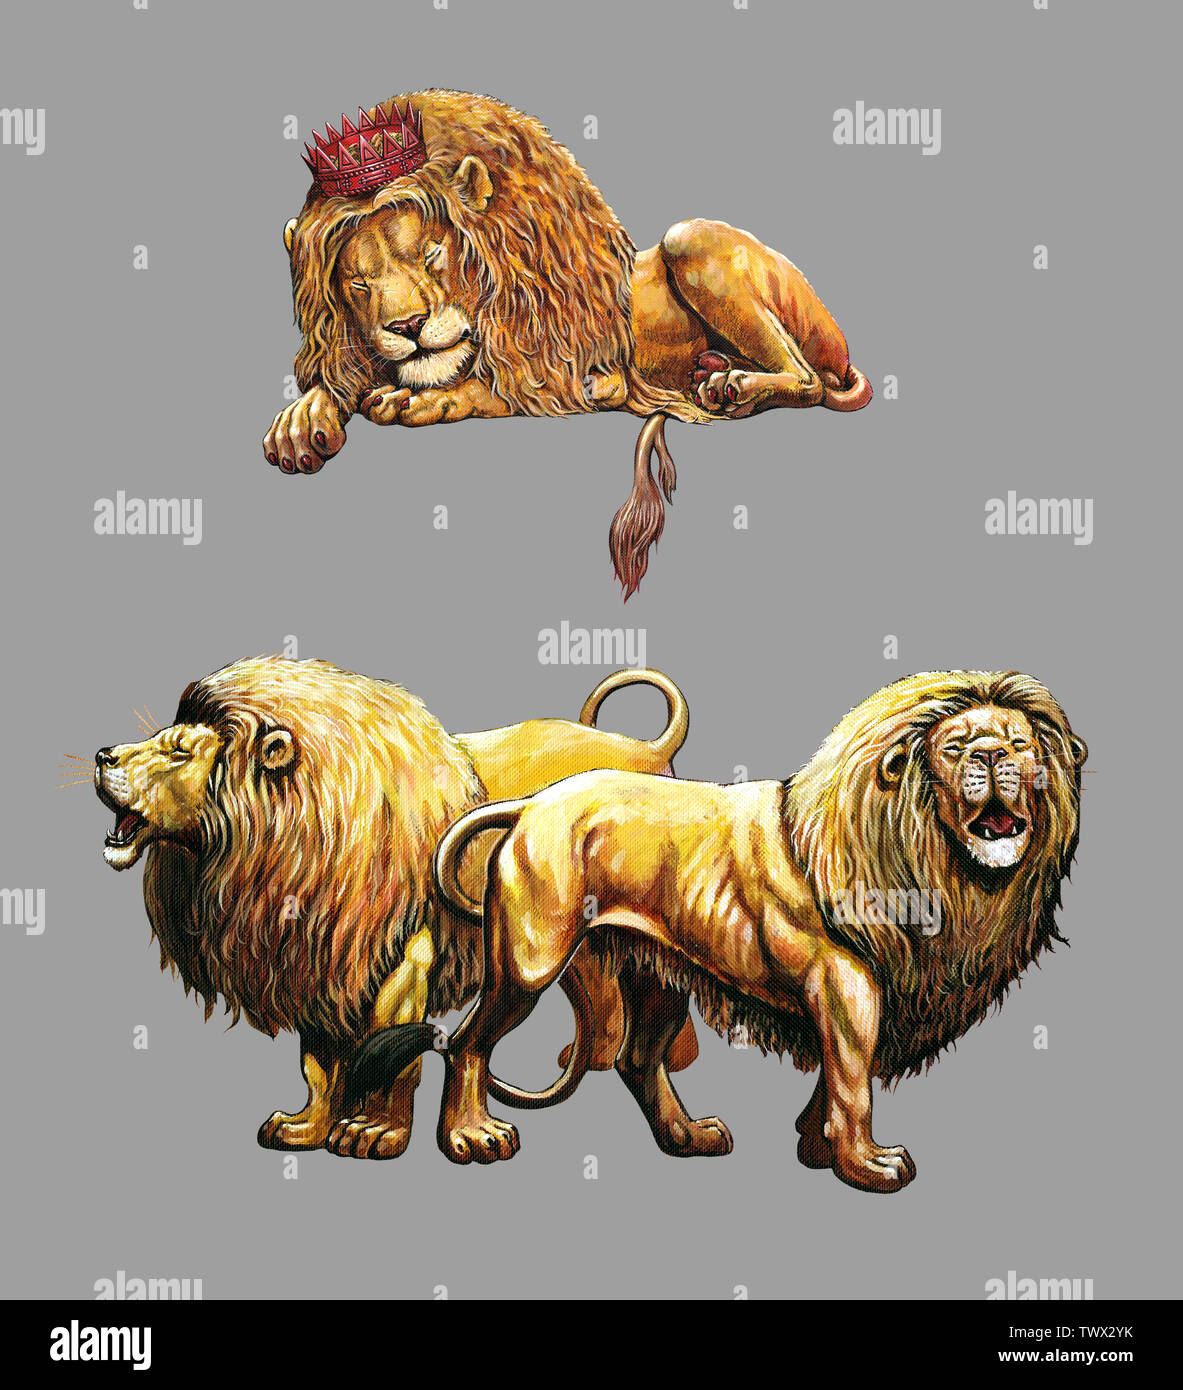 Dormir et lion rugissant. Lions 2 illustrations. Big cat illustration acrylique. Banque D'Images